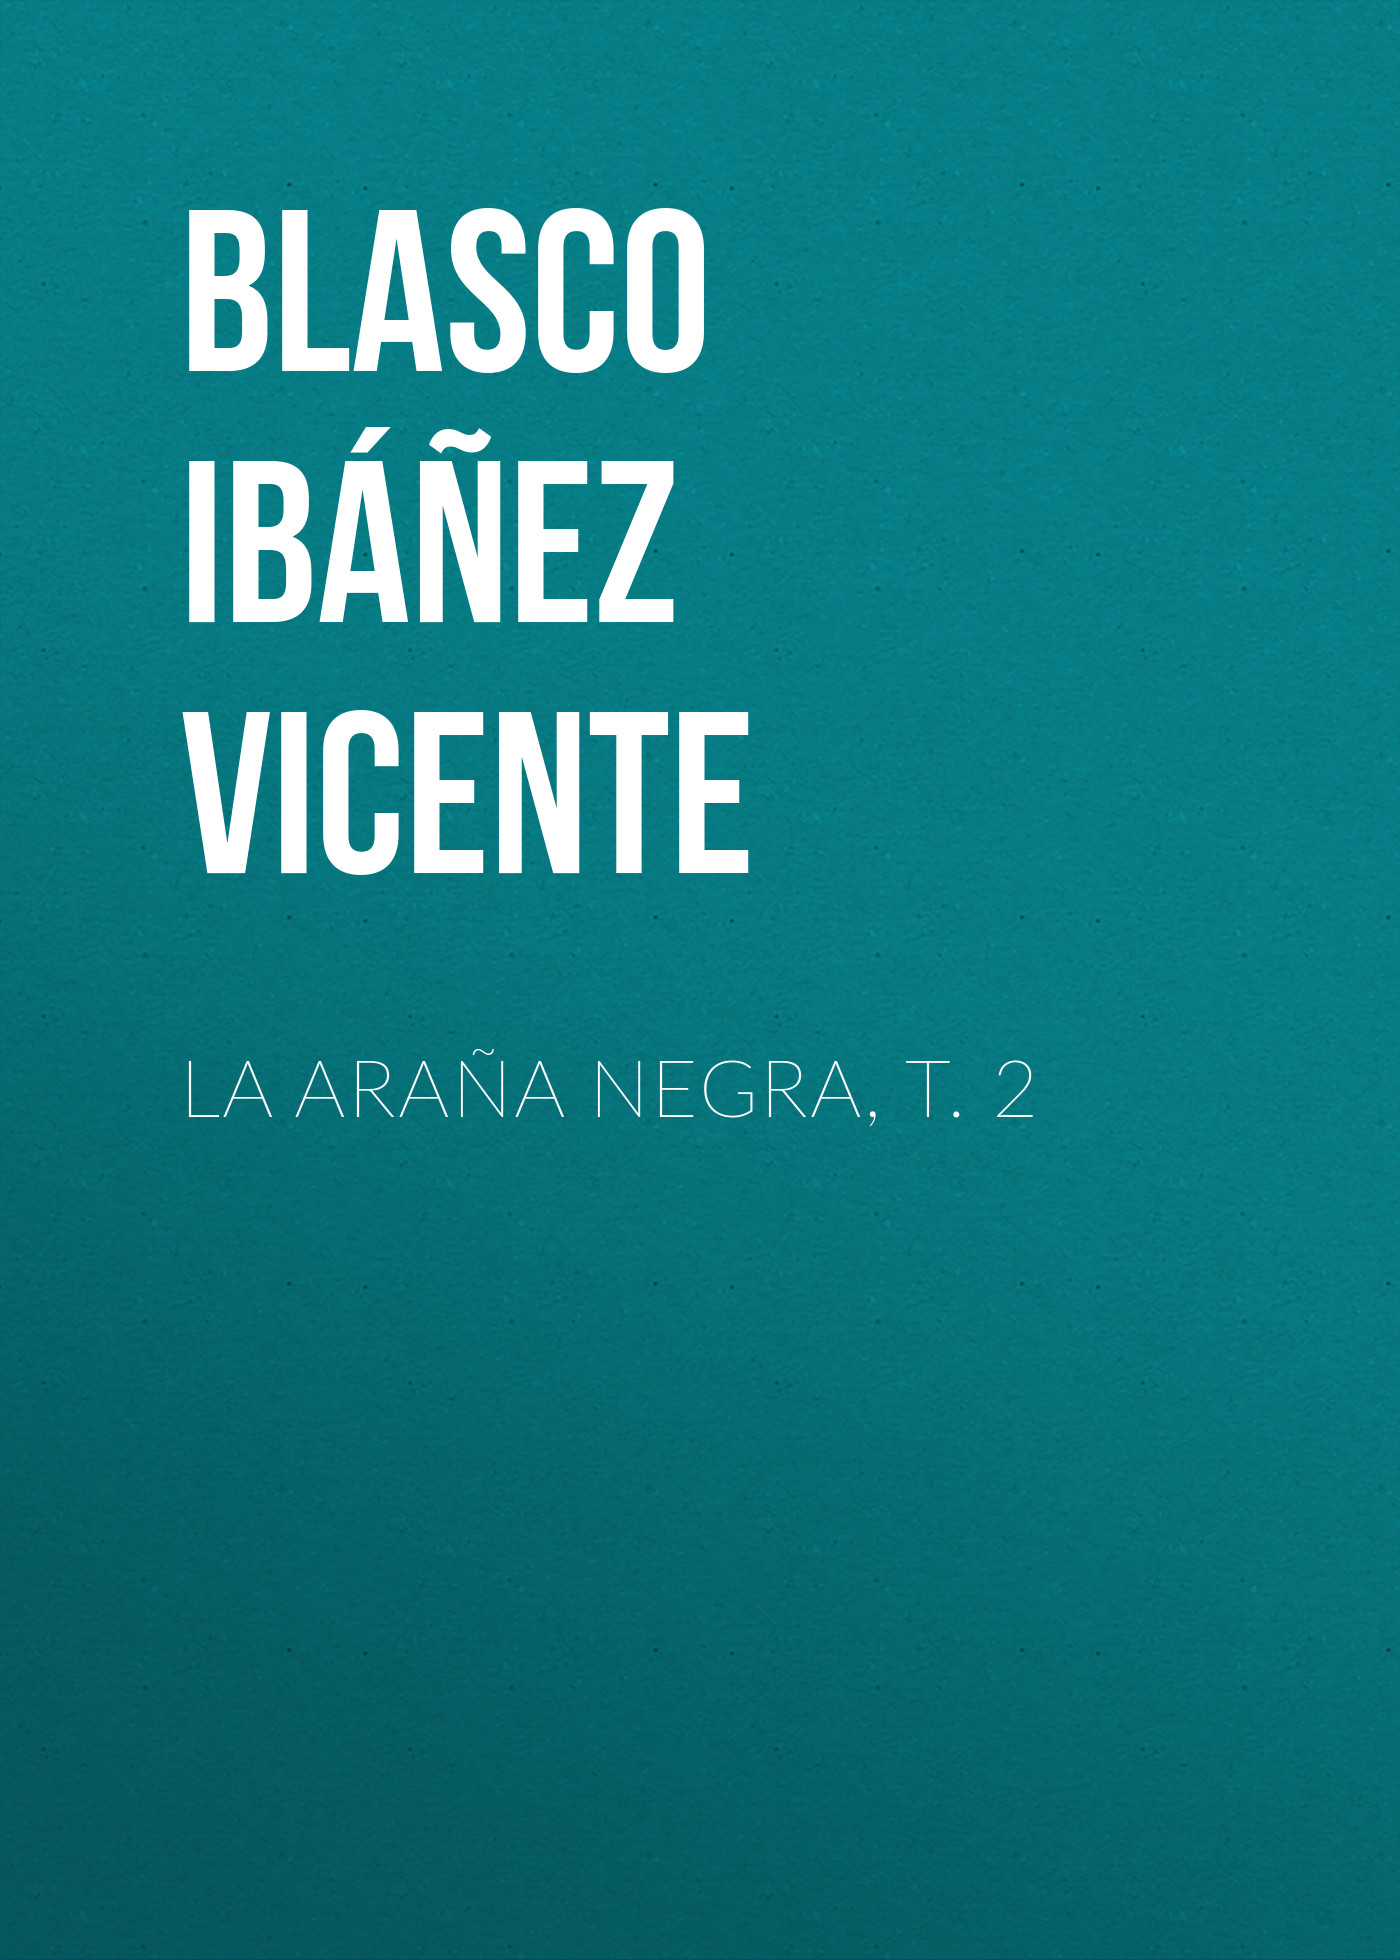 Книга La araña negra, t. 2 из серии , созданная Vicente Blasco Ibáñez, может относится к жанру Зарубежная классика, Зарубежная старинная литература, Иностранные языки. Стоимость электронной книги La araña negra, t. 2 с идентификатором 24178812 составляет 0.90 руб.